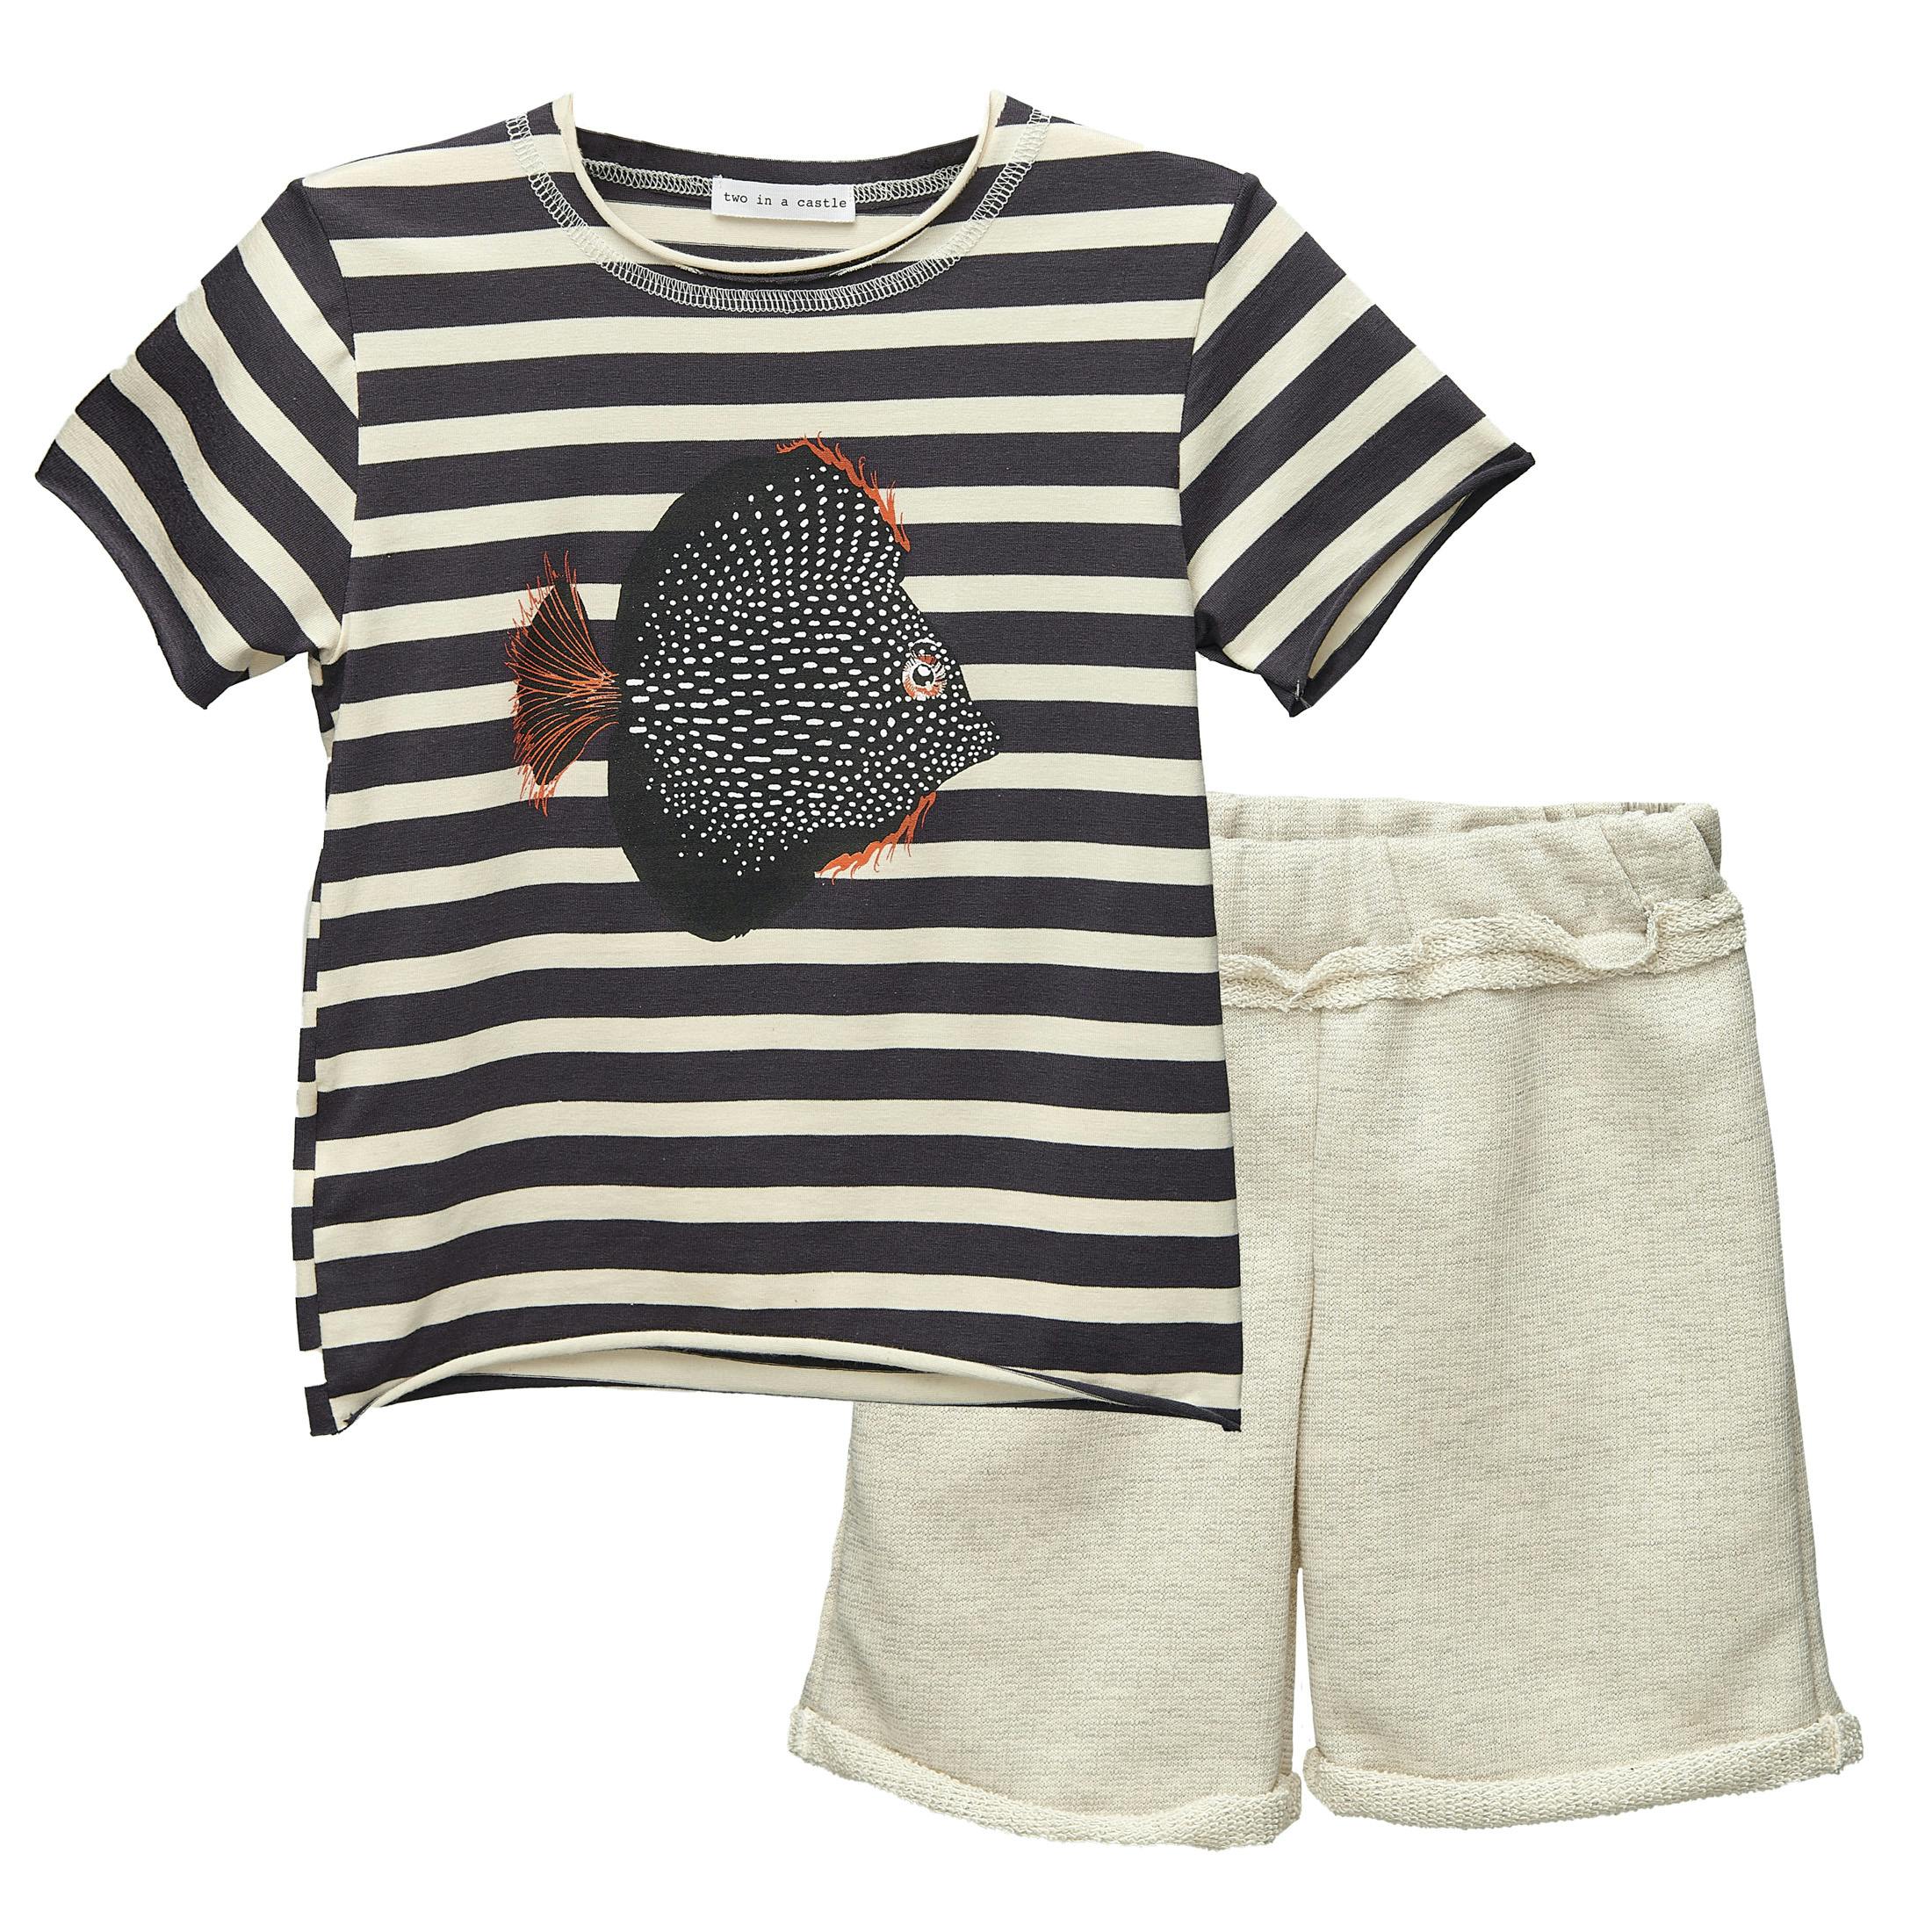  Set W/Striped Fish T-Shirt & Shorts Kid